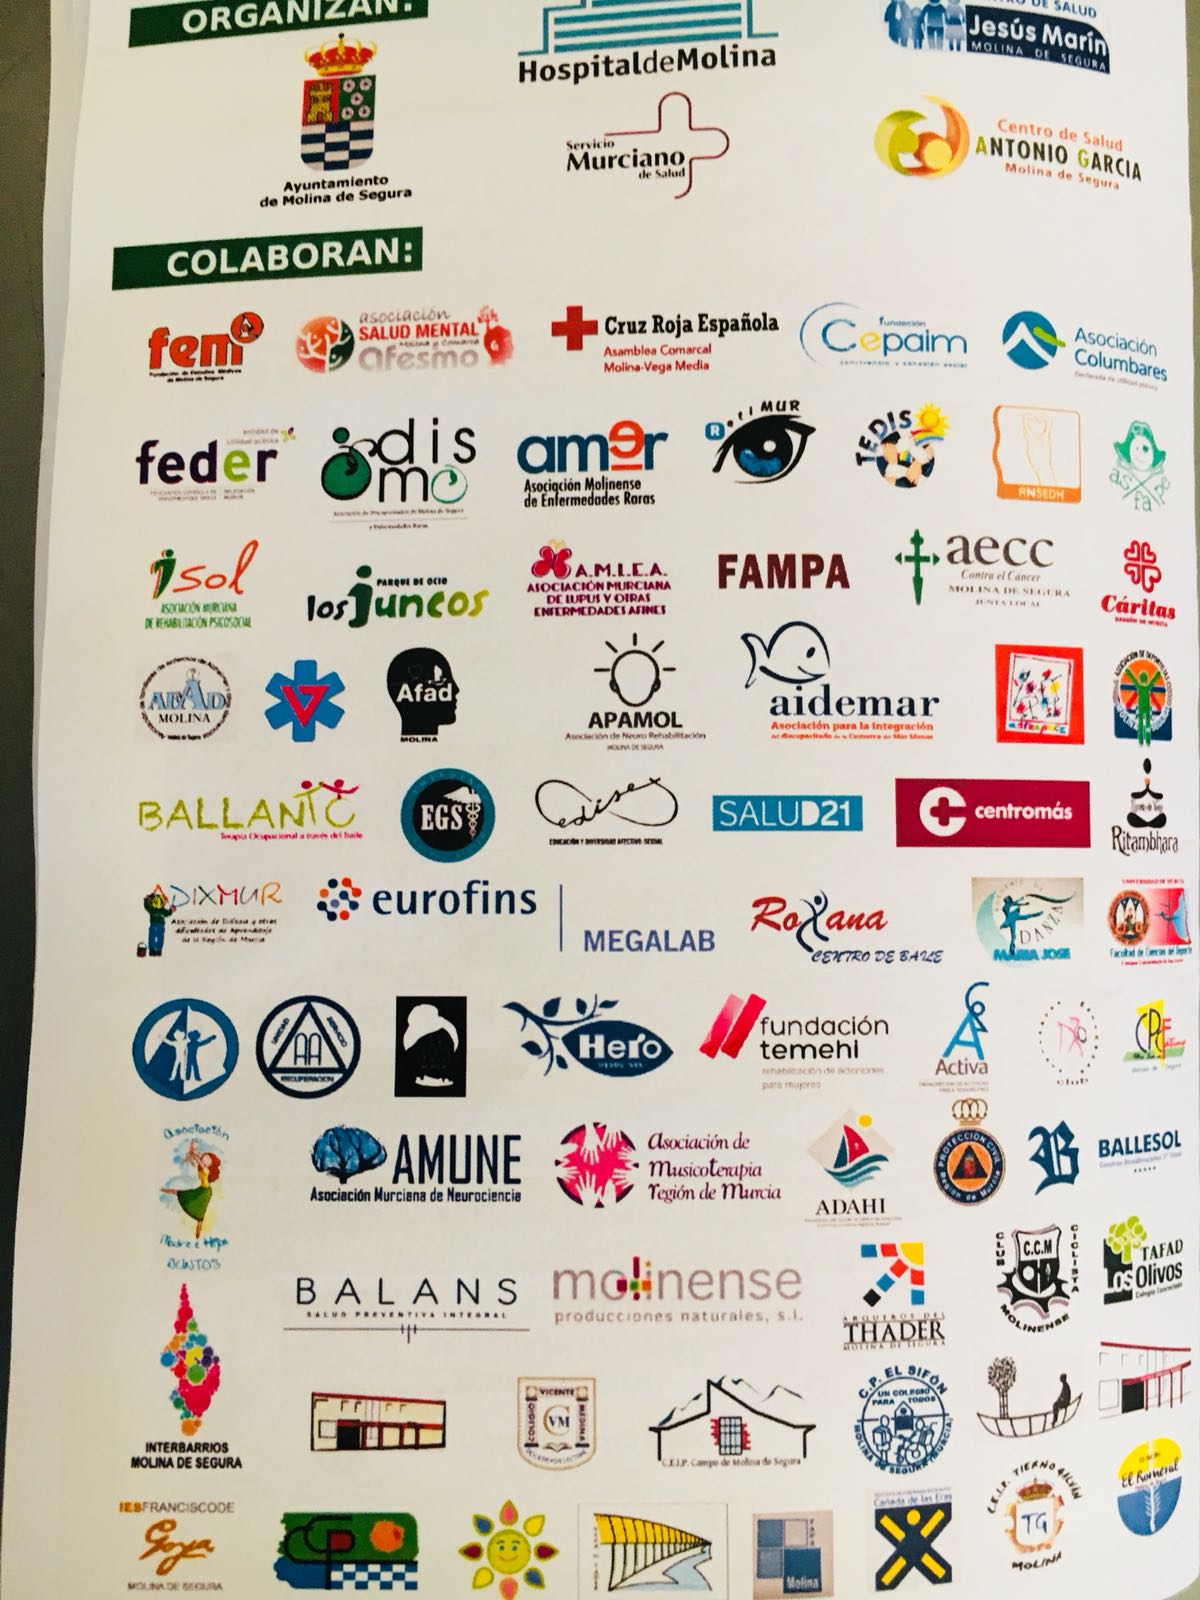 Asociaciones participantes en la Feria de Salud de Molina Abril de 2018